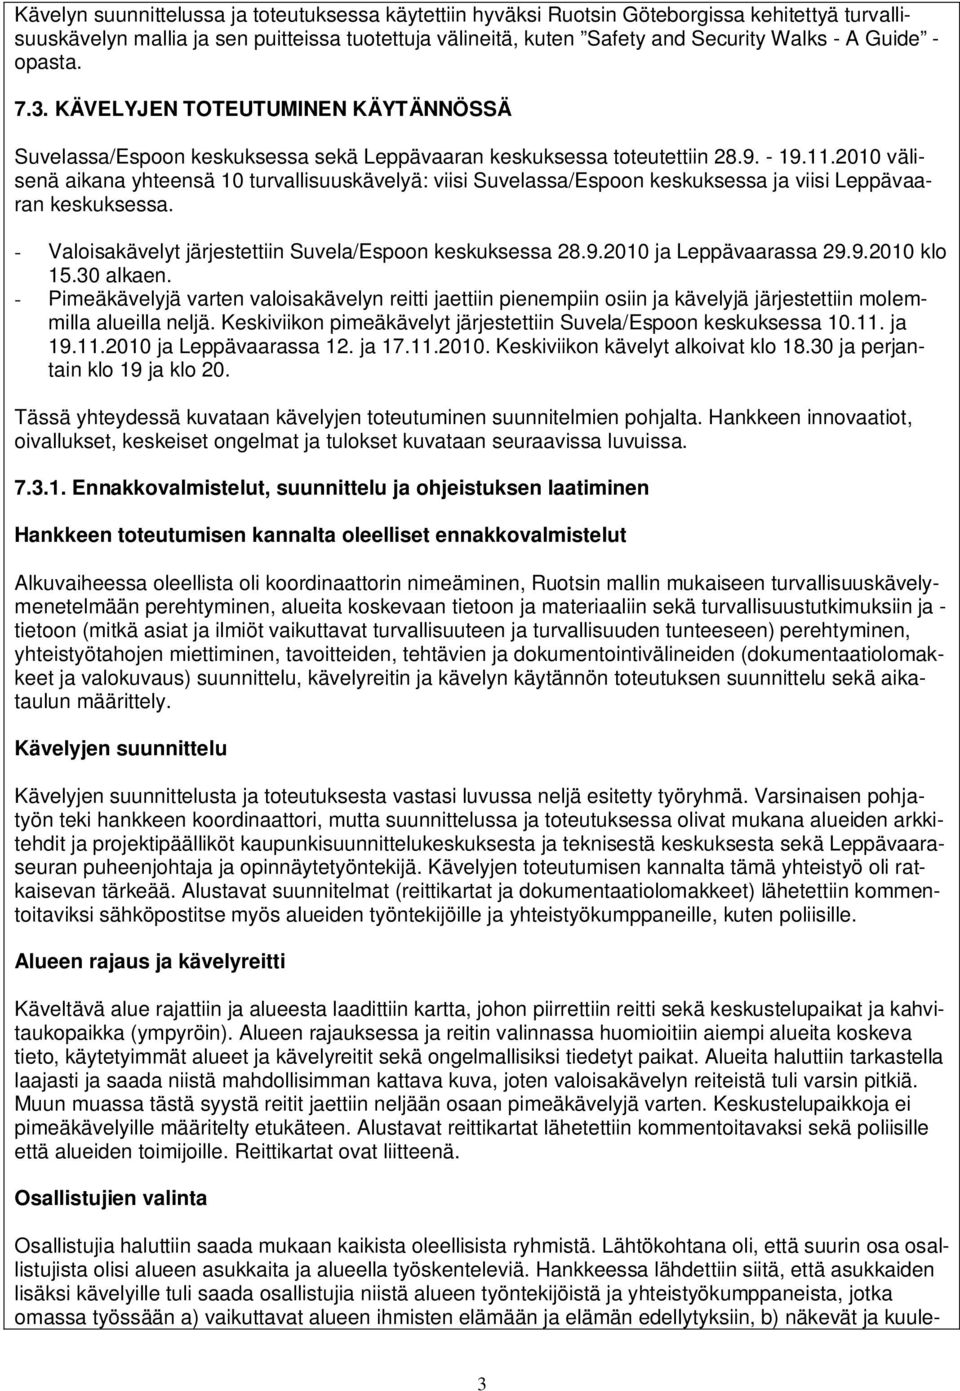 2010 välisenä aikana yhteensä 10 turvallisuuskävelyä: viisi Suvelassa/Espoon keskuksessa ja viisi Leppävaaran keskuksessa. - Valoisakävelyt järjestettiin Suvela/Espoon keskuksessa 28.9.